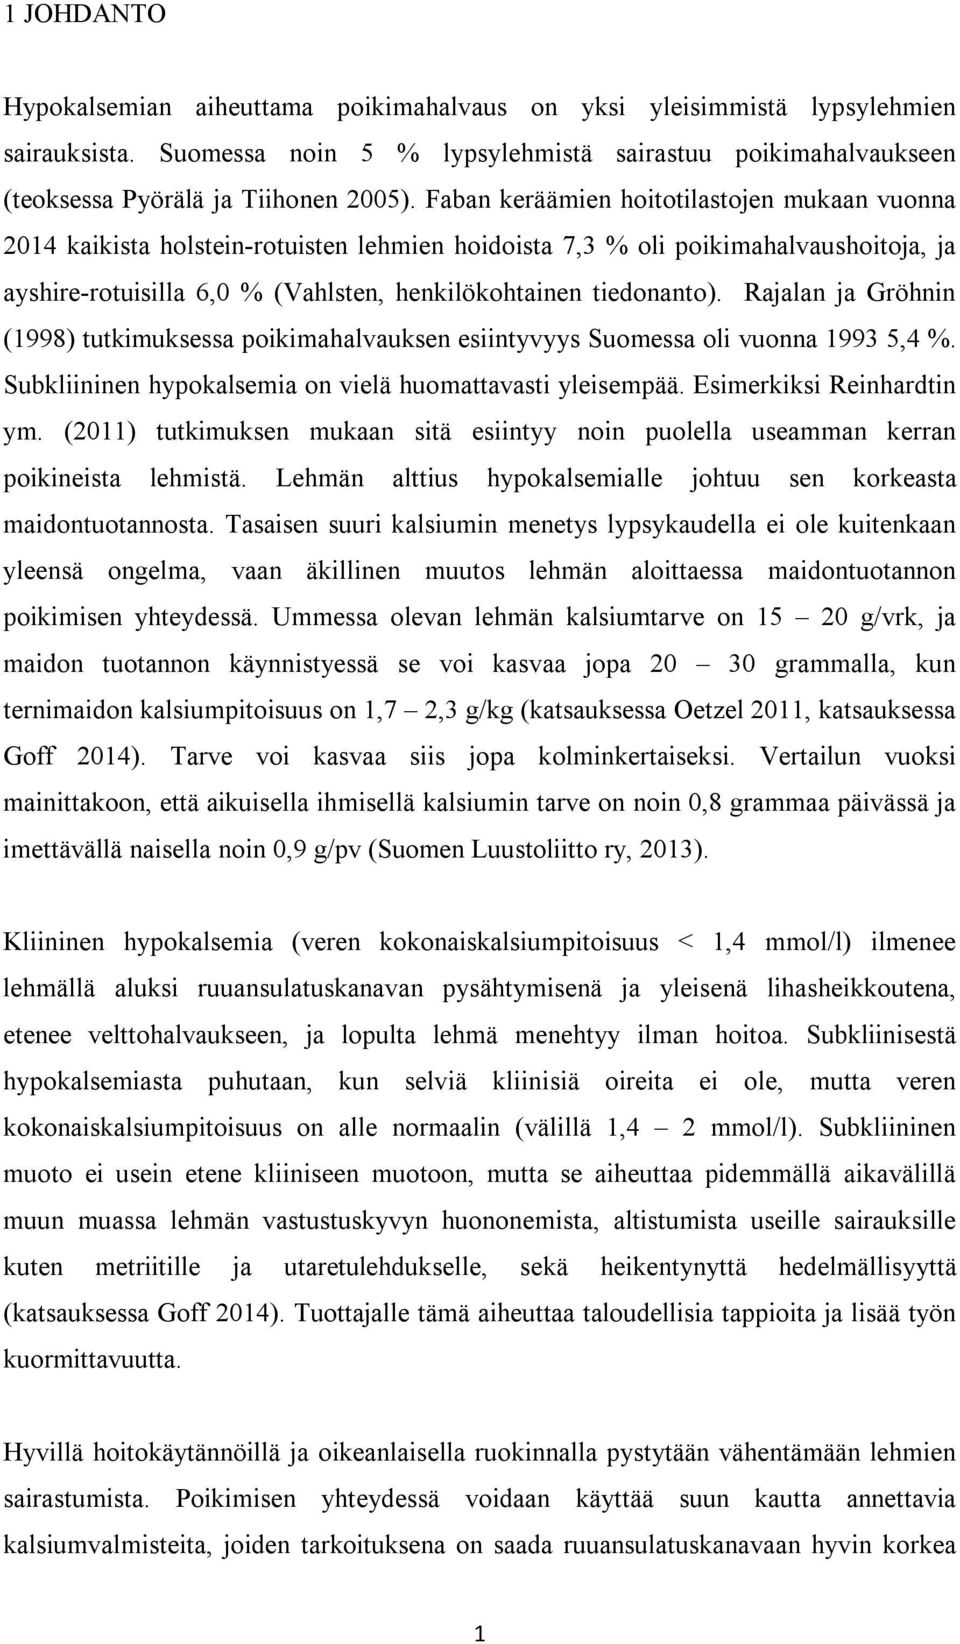 Rajalan ja Gröhnin (1998) tutkimuksessa poikimahalvauksen esiintyvyys Suomessa oli vuonna 1993 5,4 %. Subkliininen hypokalsemia on vielä huomattavasti yleisempää. Esimerkiksi Reinhardtin ym.